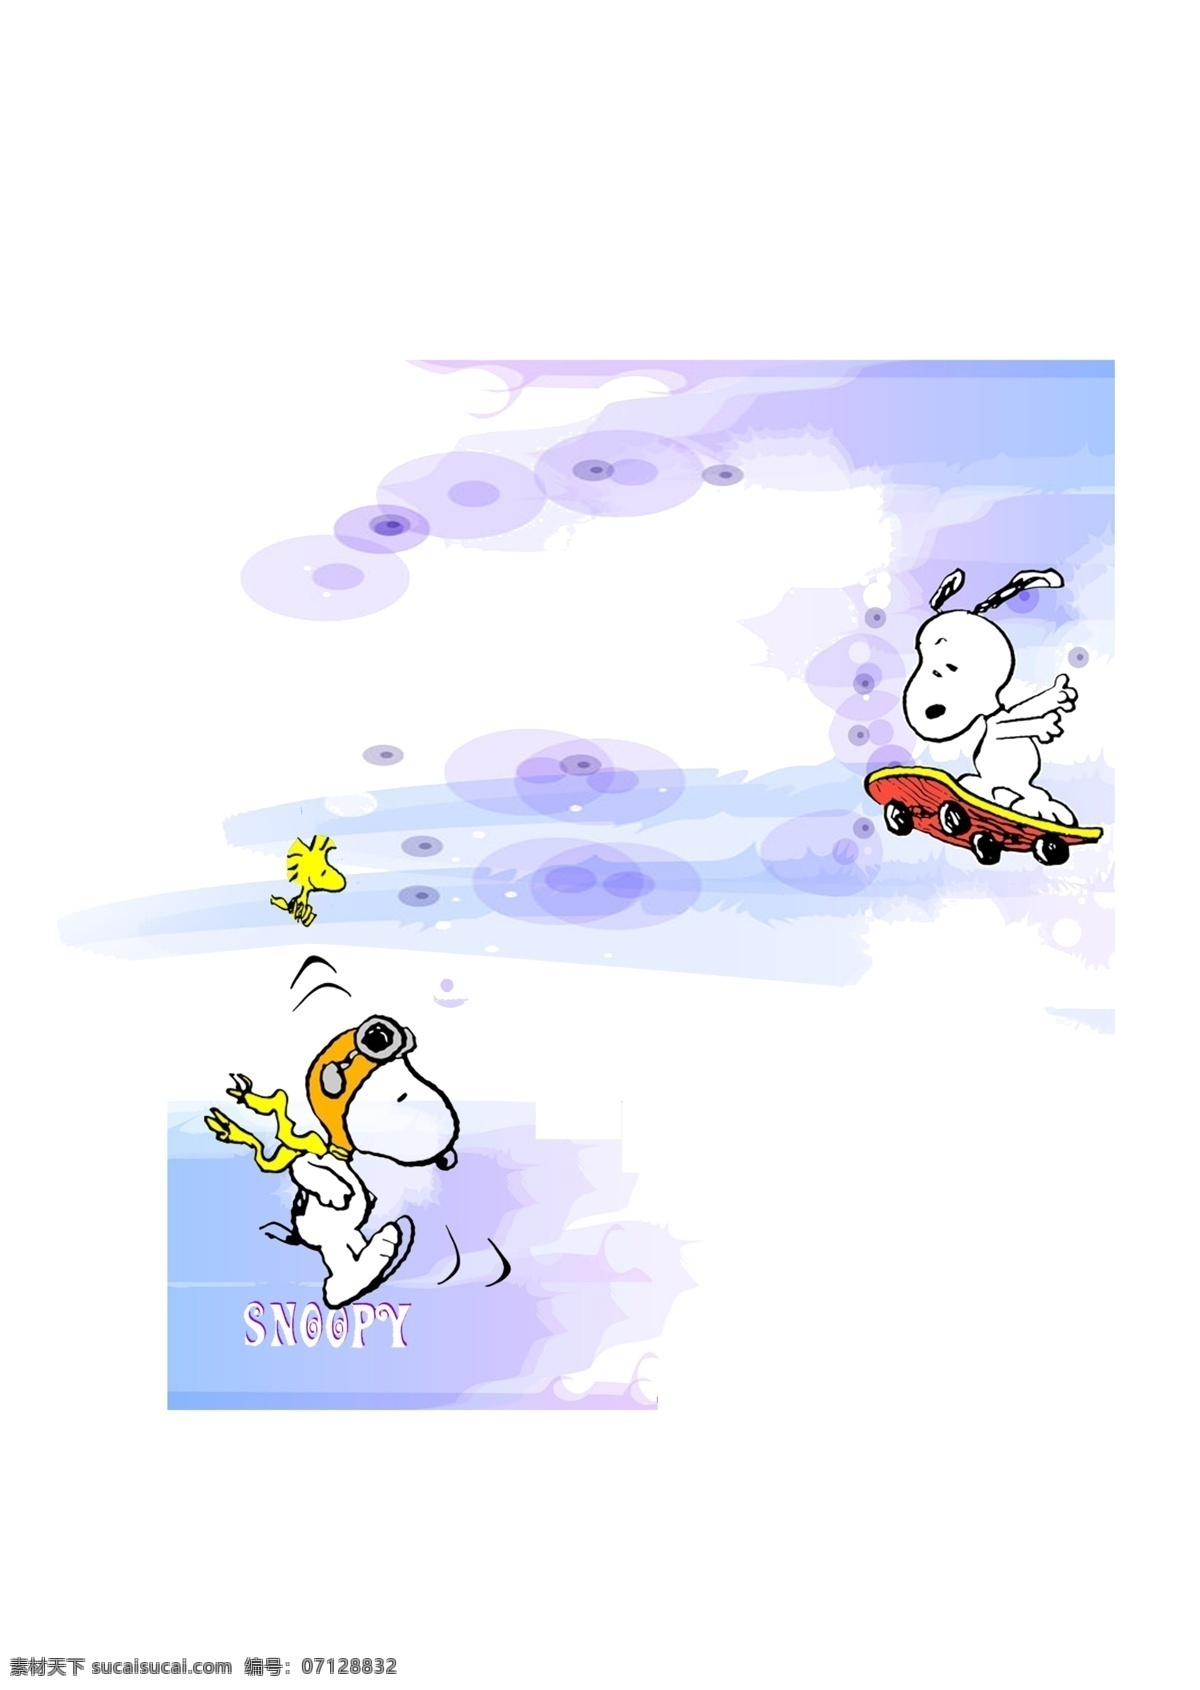 史努比 宠物 狗狗 可爱 动画 滑板 鸟 云 飞行员 跳跃 动作 分层 源文件